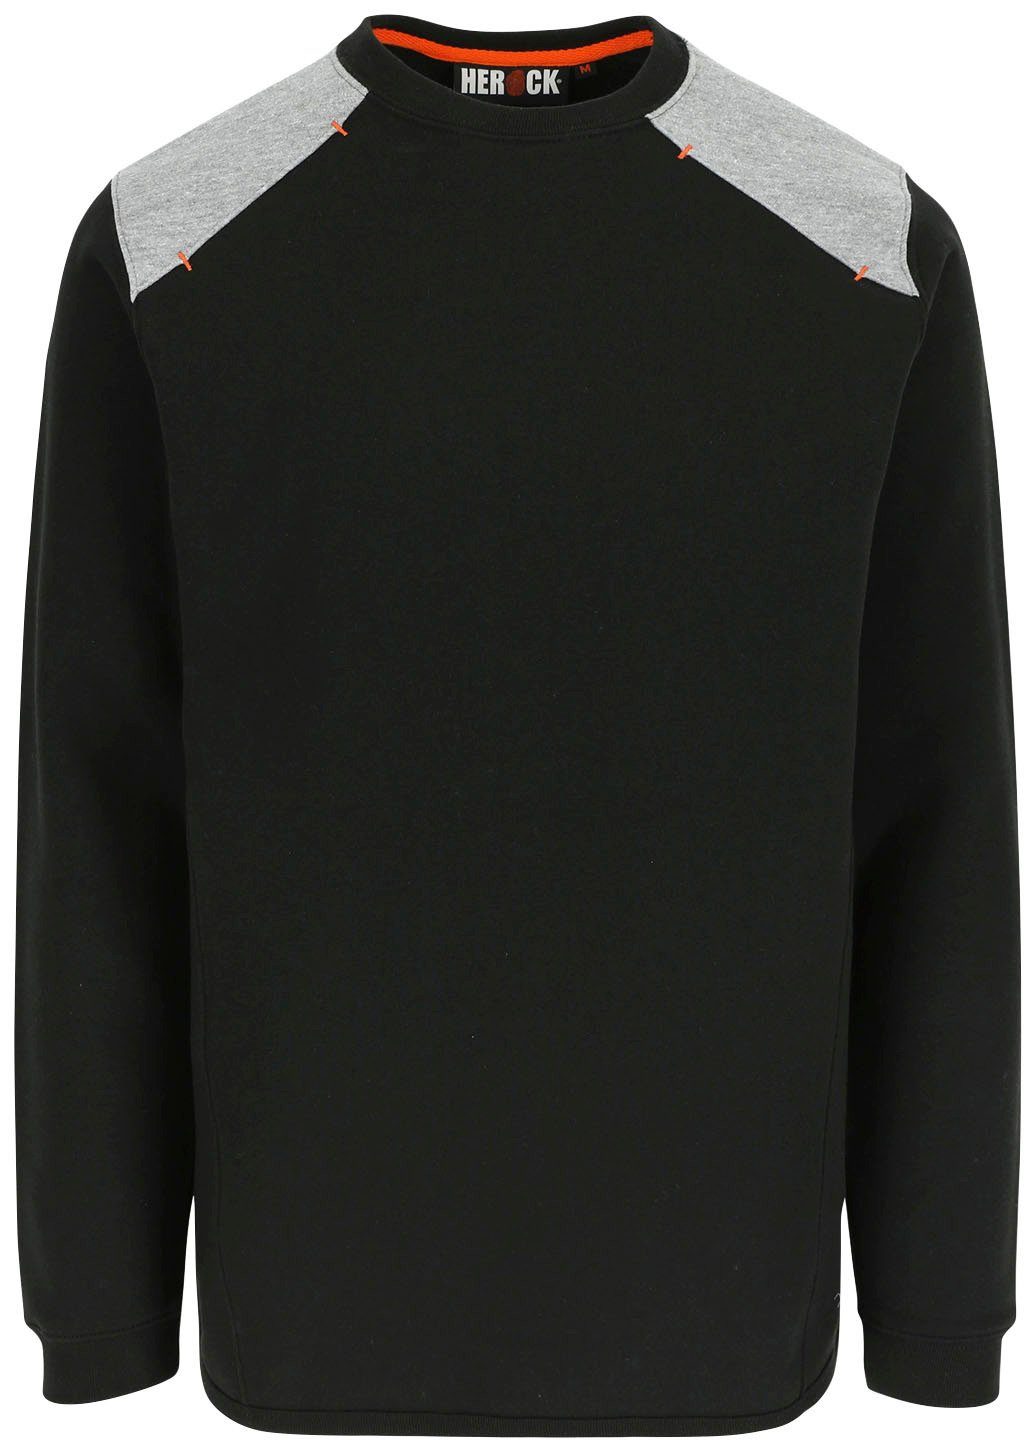 Langes Herock - schwarz Kragen Sweater Artemis Rundhalspullover - Rückenteil Rippstrick Tragegefühl weiches